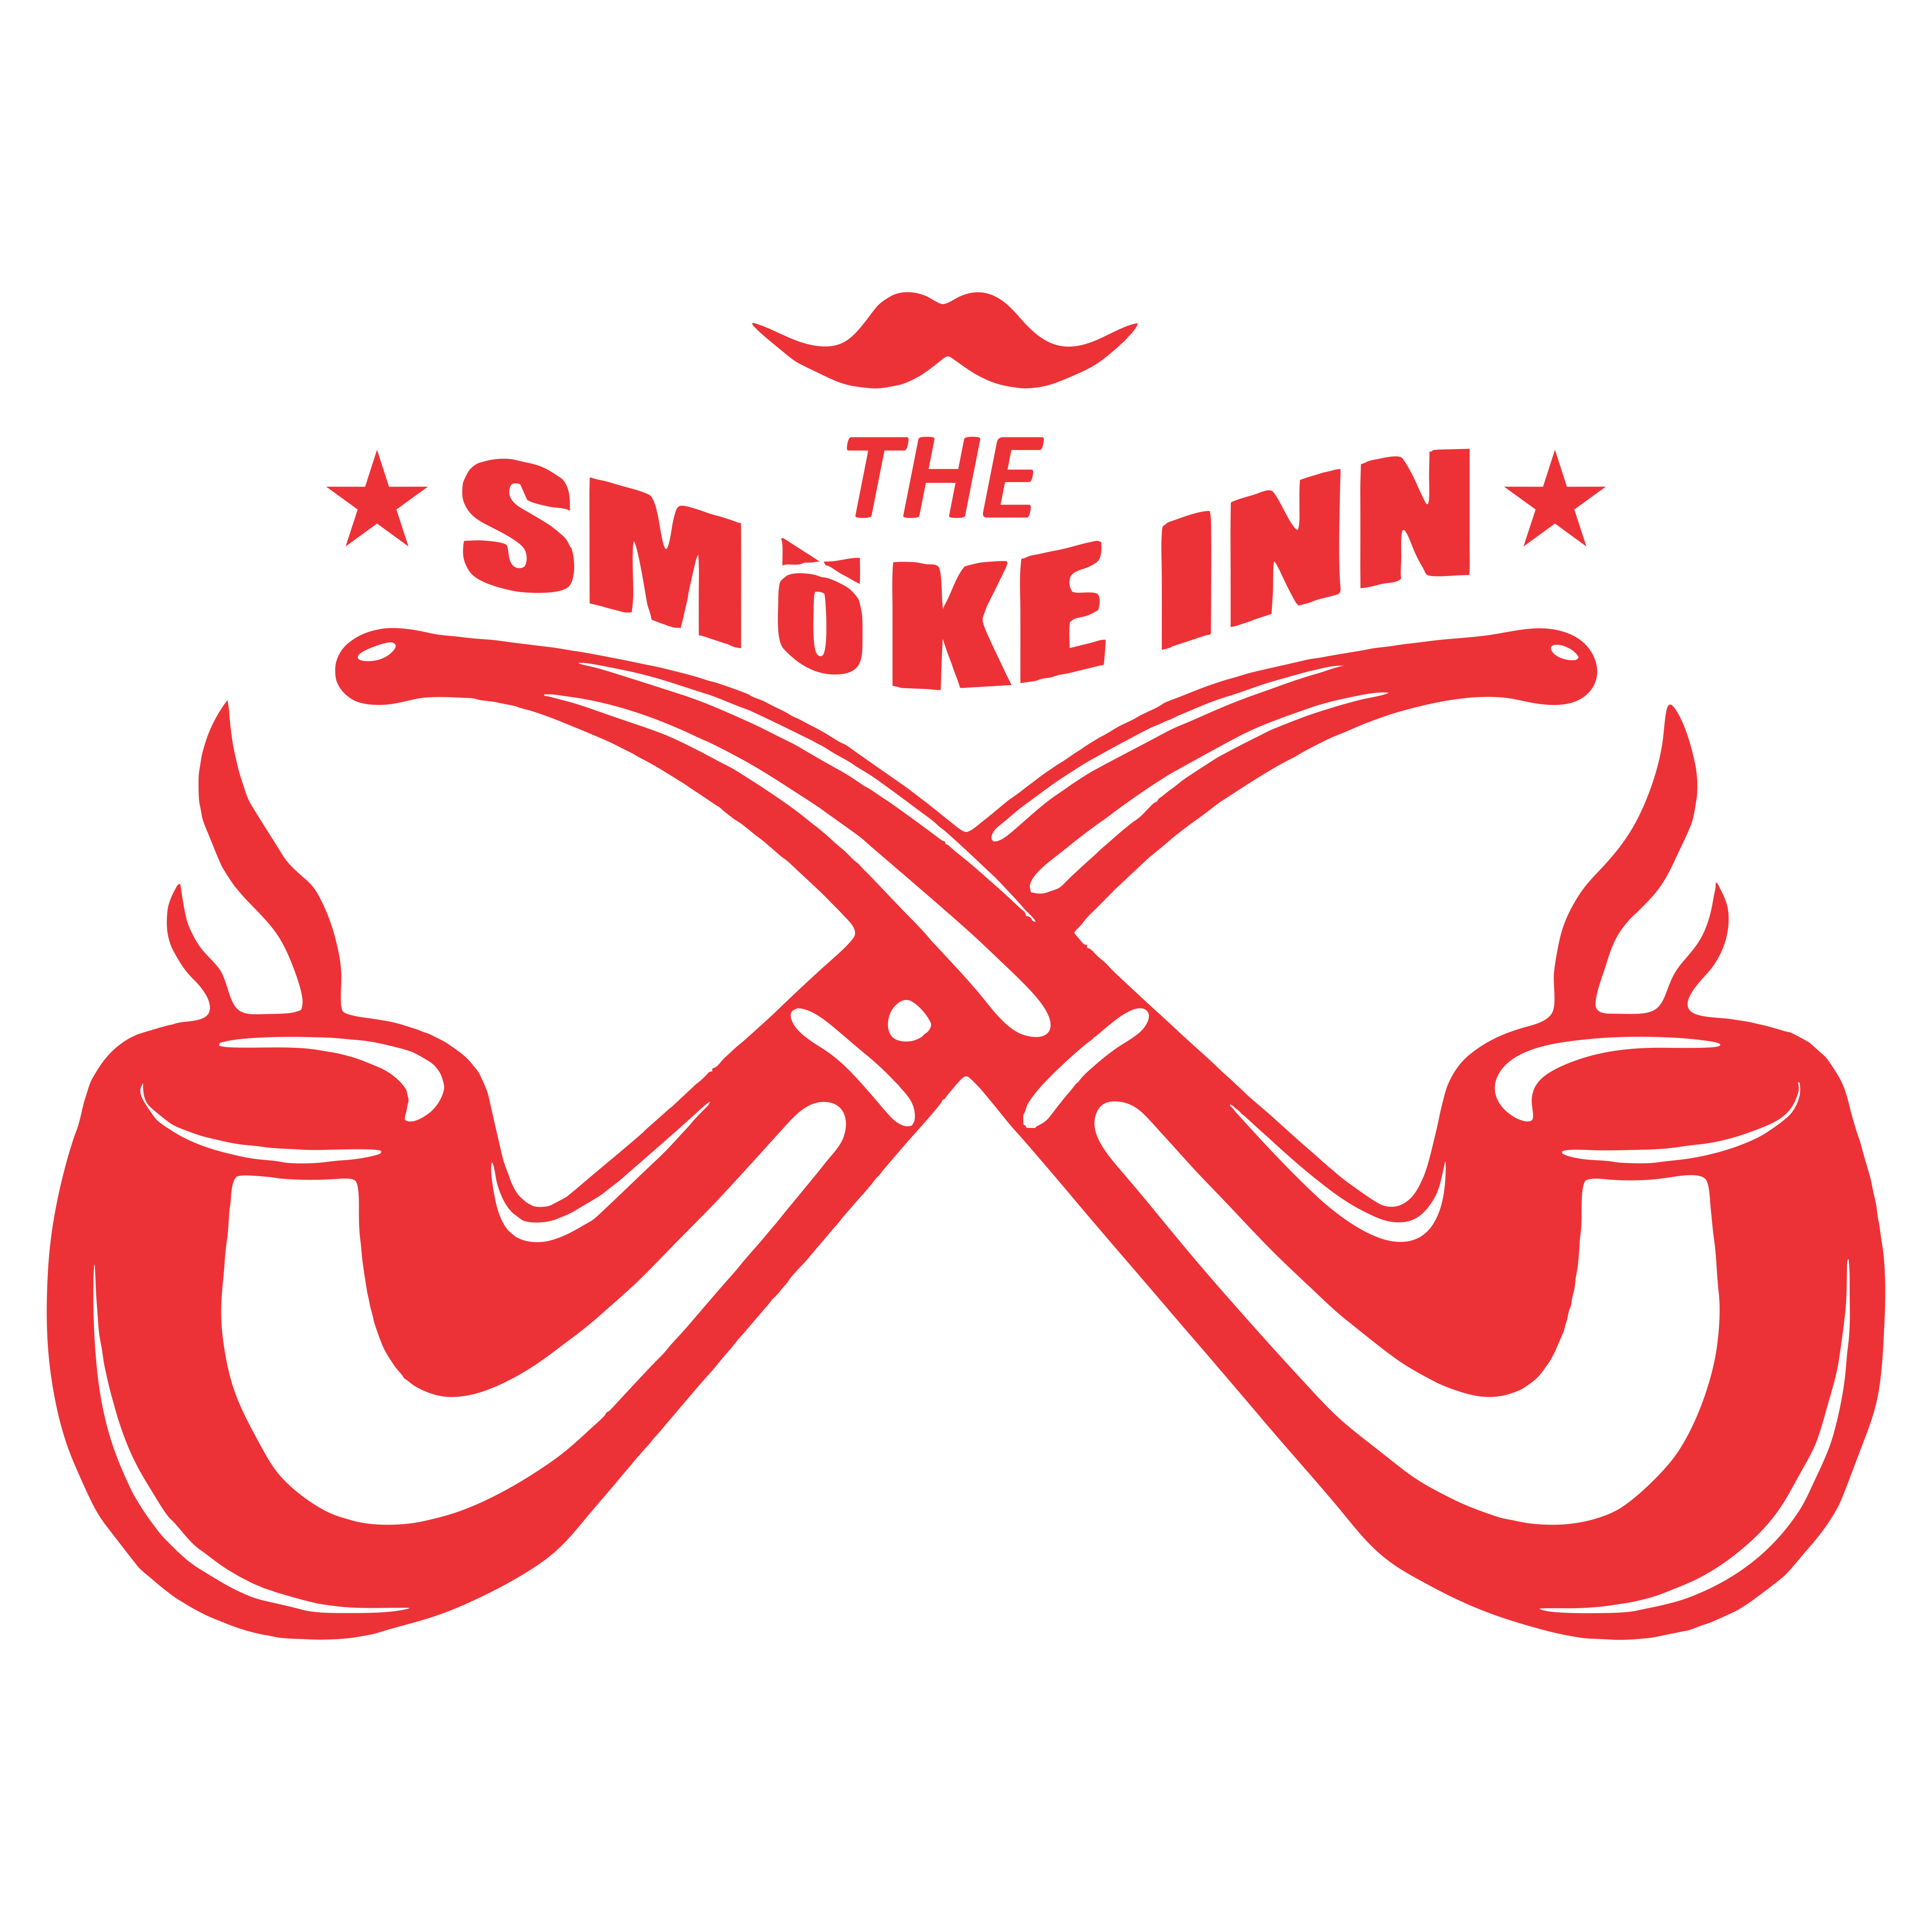 The Smoke inn